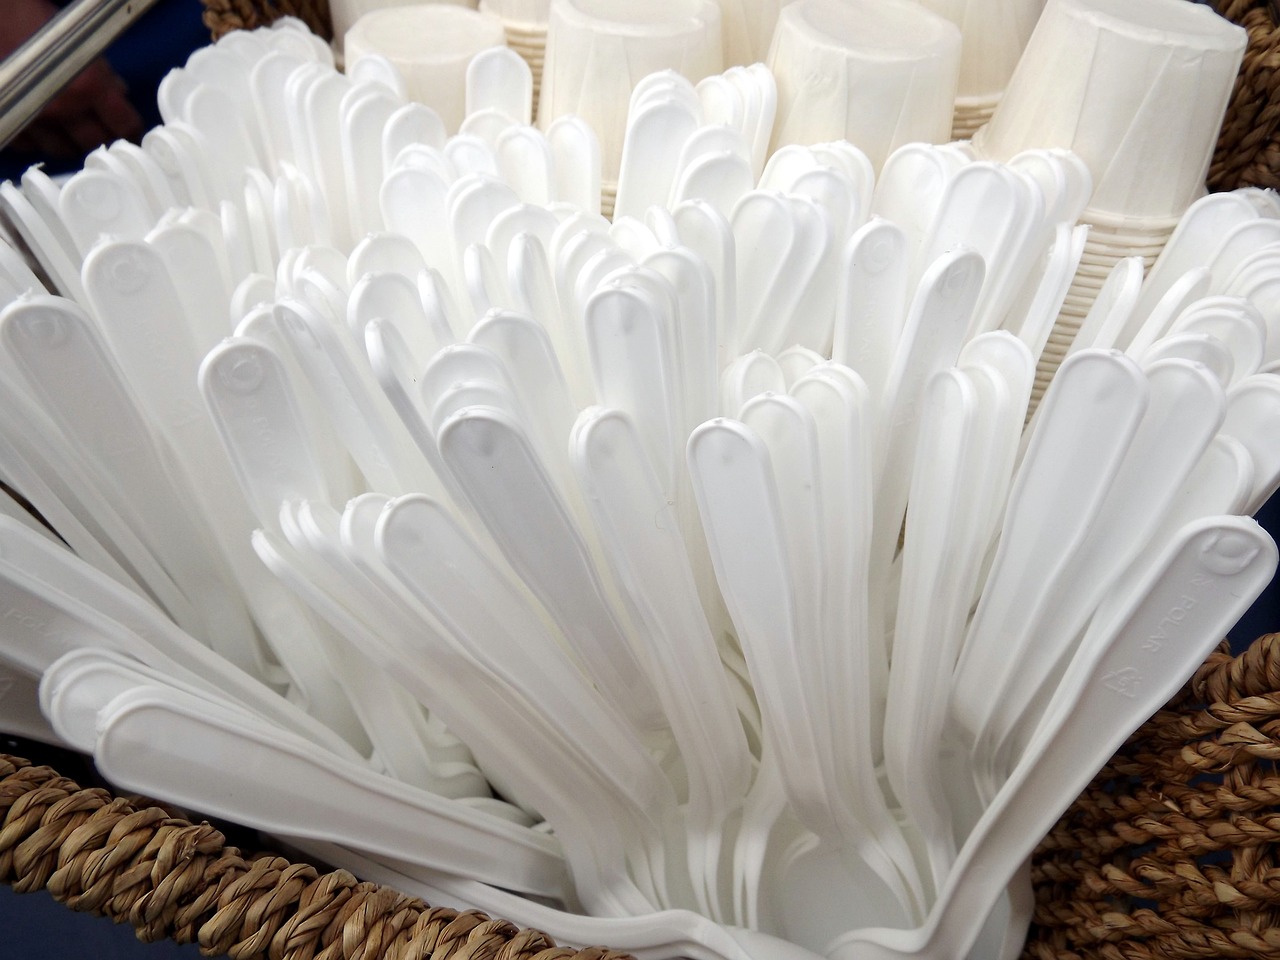 Từ 1/8 Đài Loan sẽ áp dụng lệnh cấm cung cấp sản phẩm làm từ nhựa phân hủy sinh học PLA đối với 8 nhóm đối tượng bao gồm cả cửa hàng tiện lợi. (Ảnh minh họa: kho ảnh Pixabay)